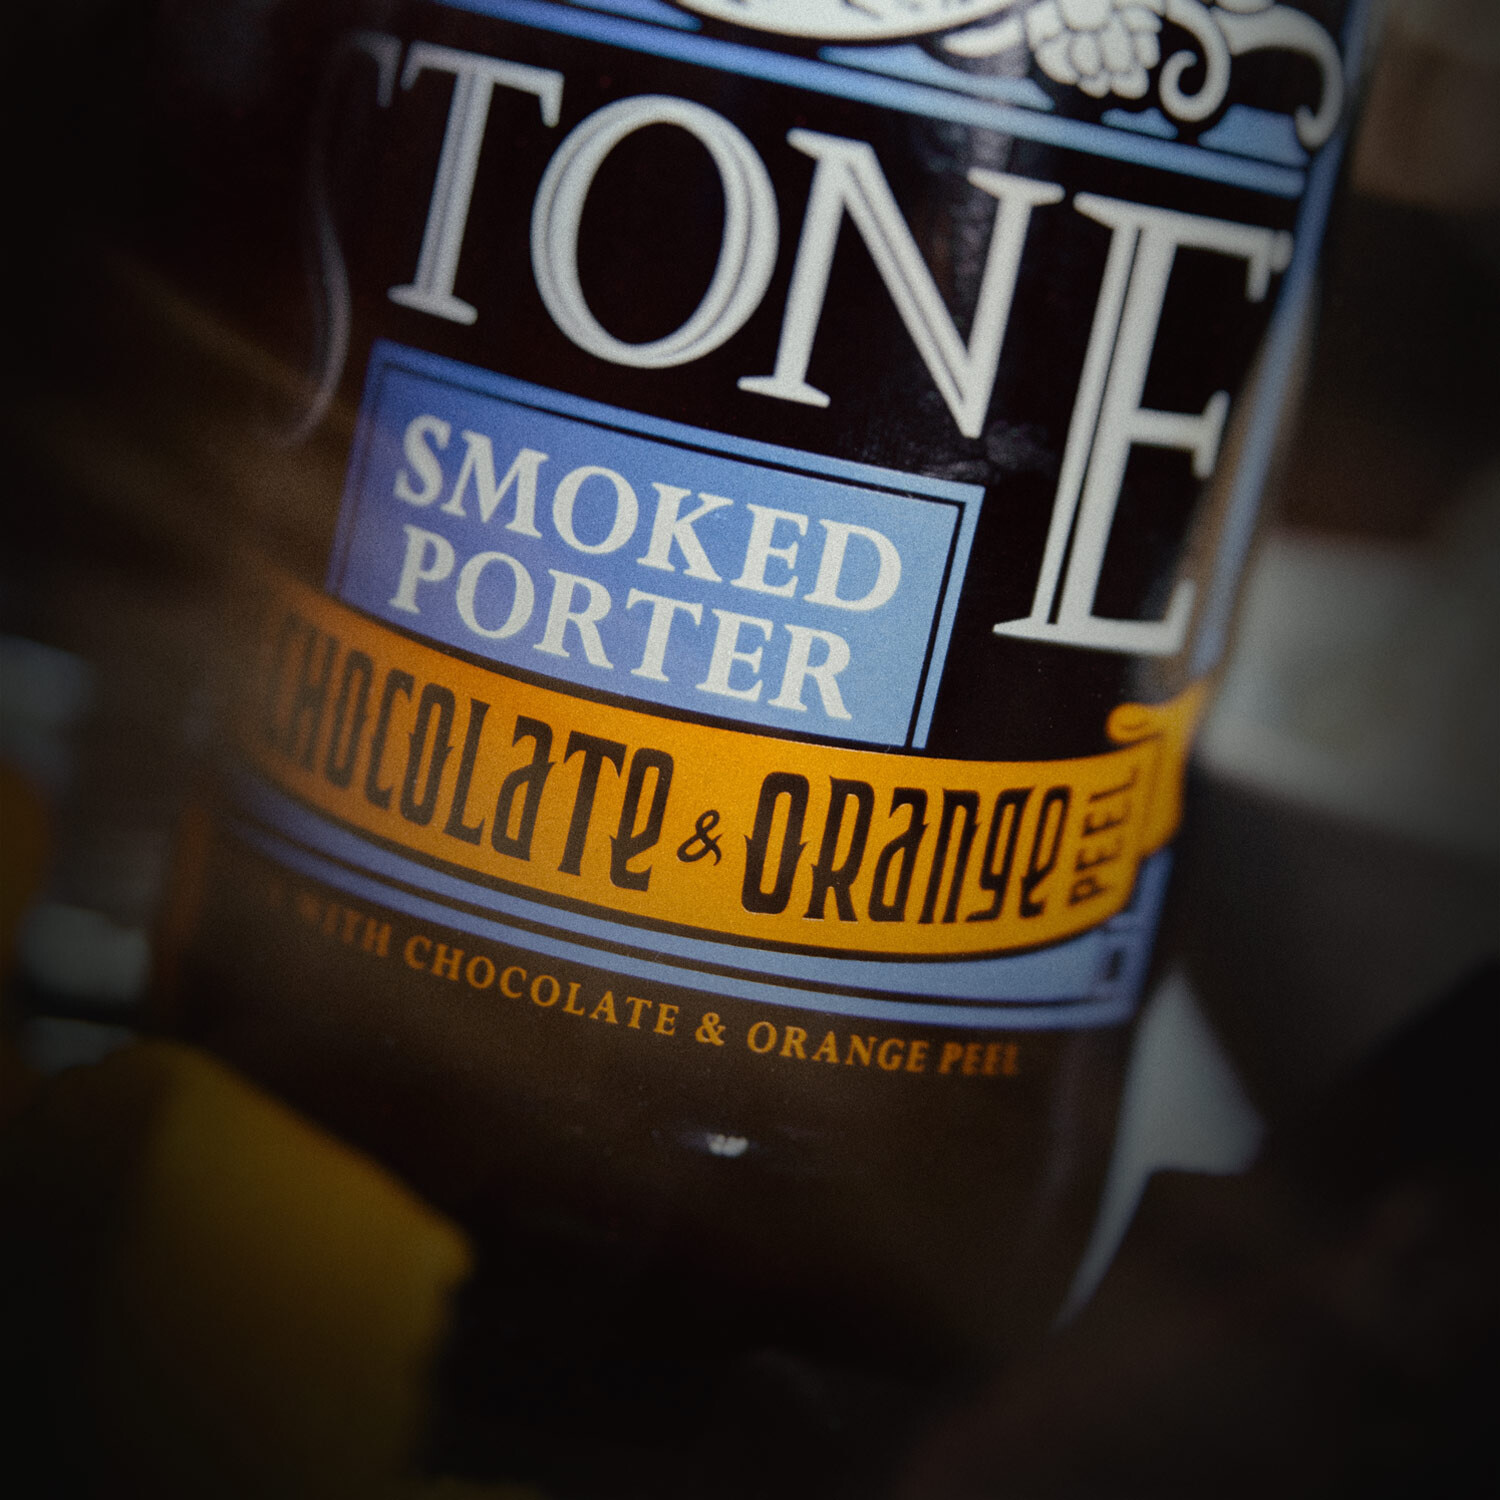 Stone Smoked Porter w/Chocolate & Orange Peel close-up